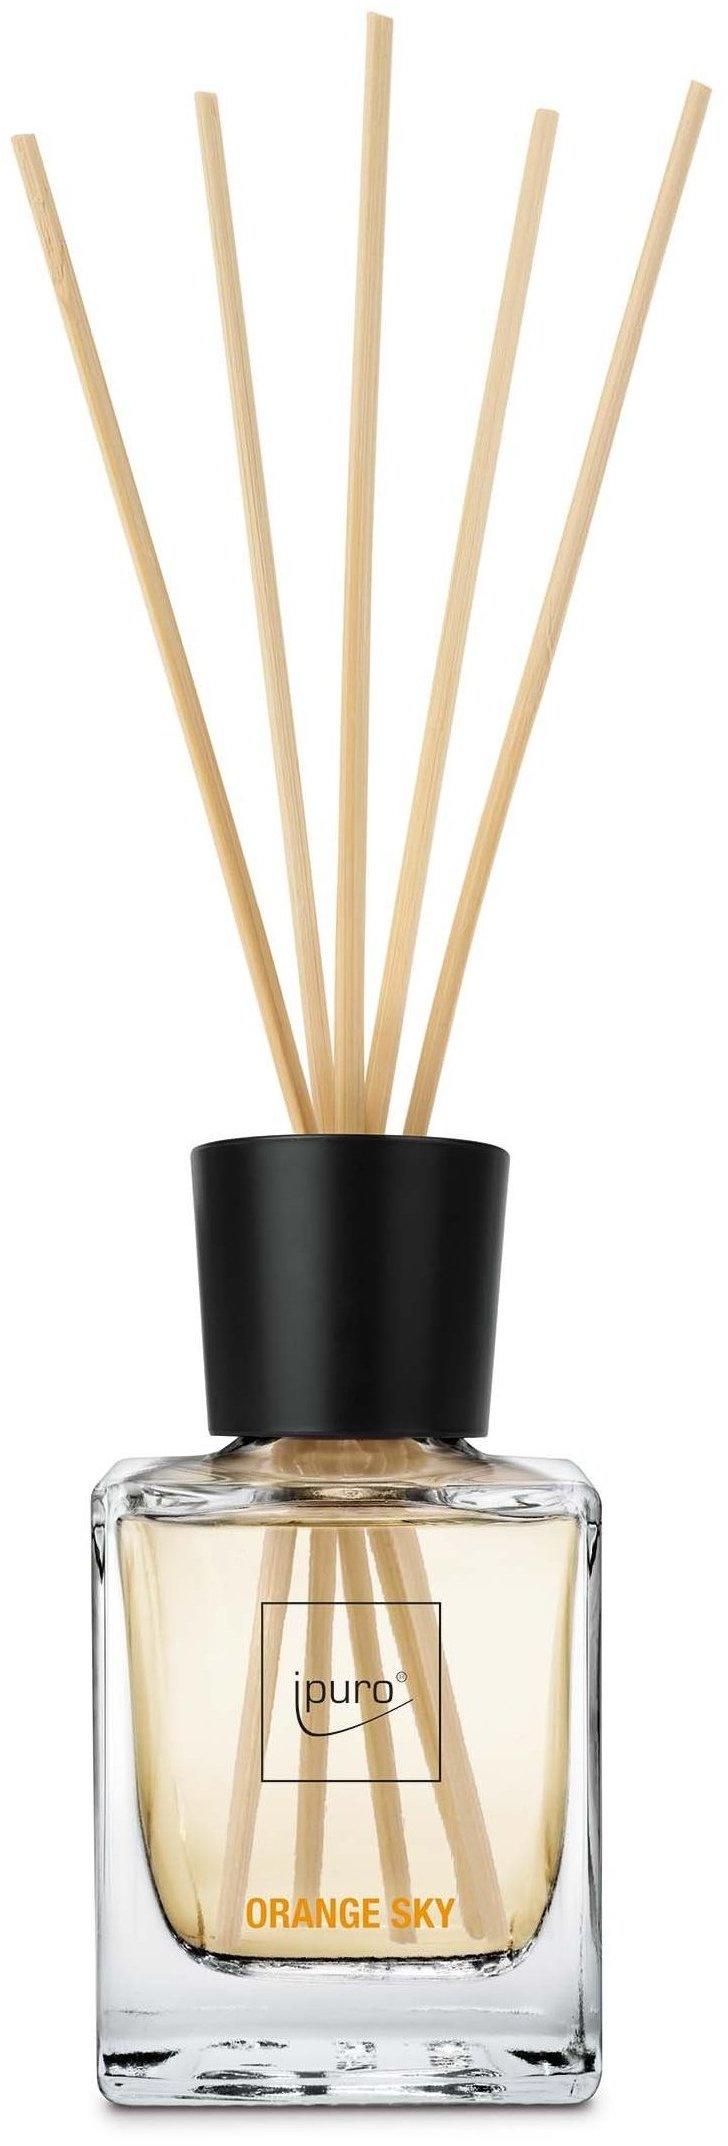 IPURO Raumduft Ipuro Essentials black bamboo Refill 500ml Nachfüllflasche  Raumduft (2